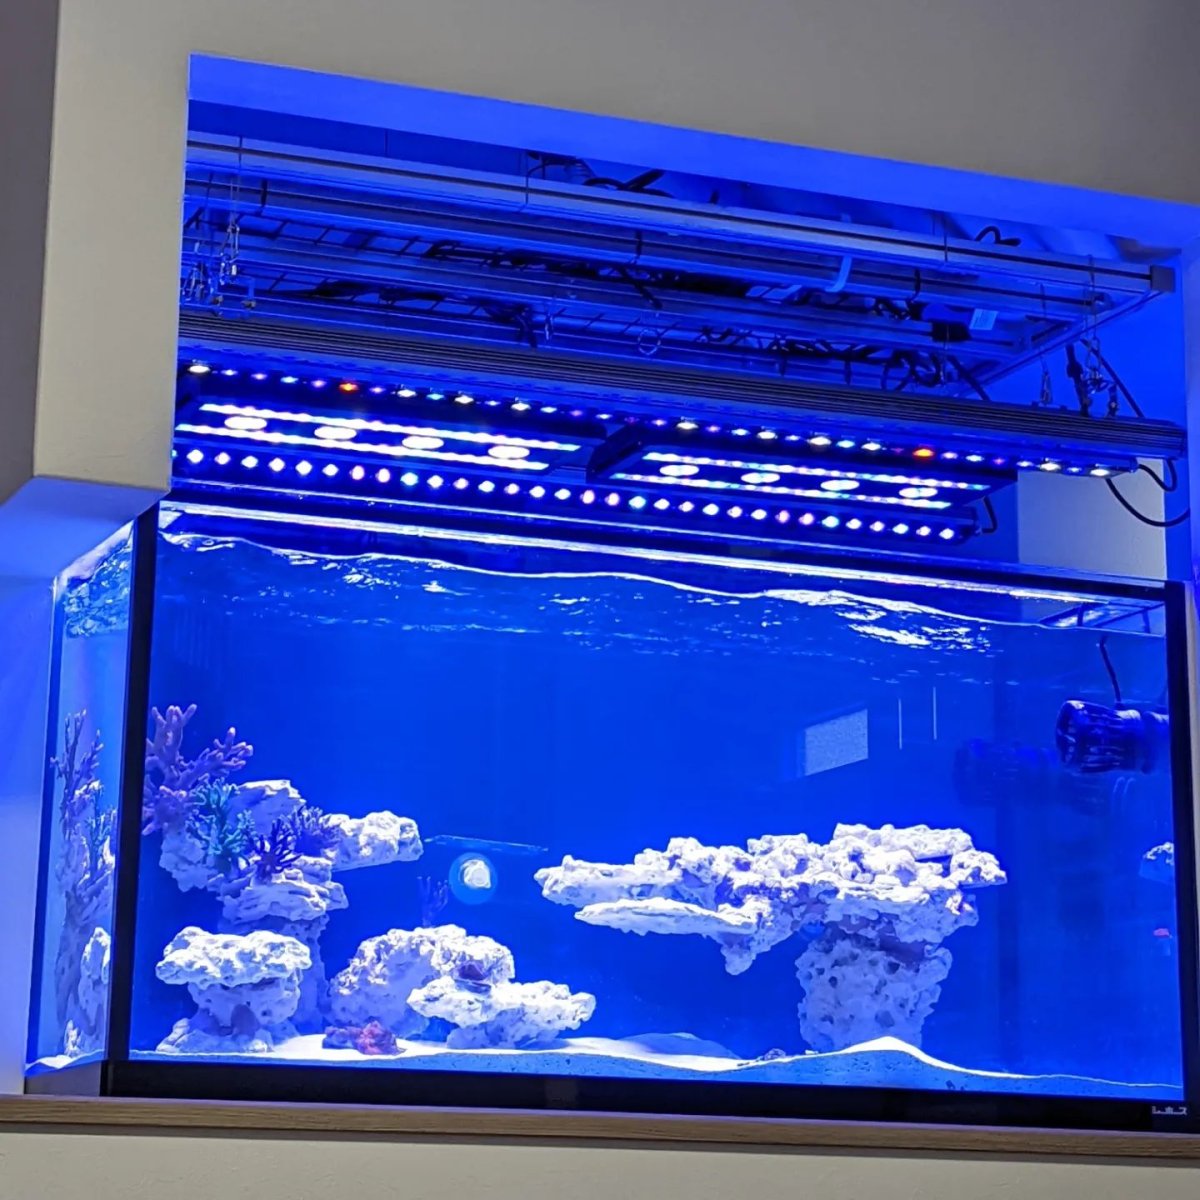 OR3 reef led light Japan aquarium.jpeg